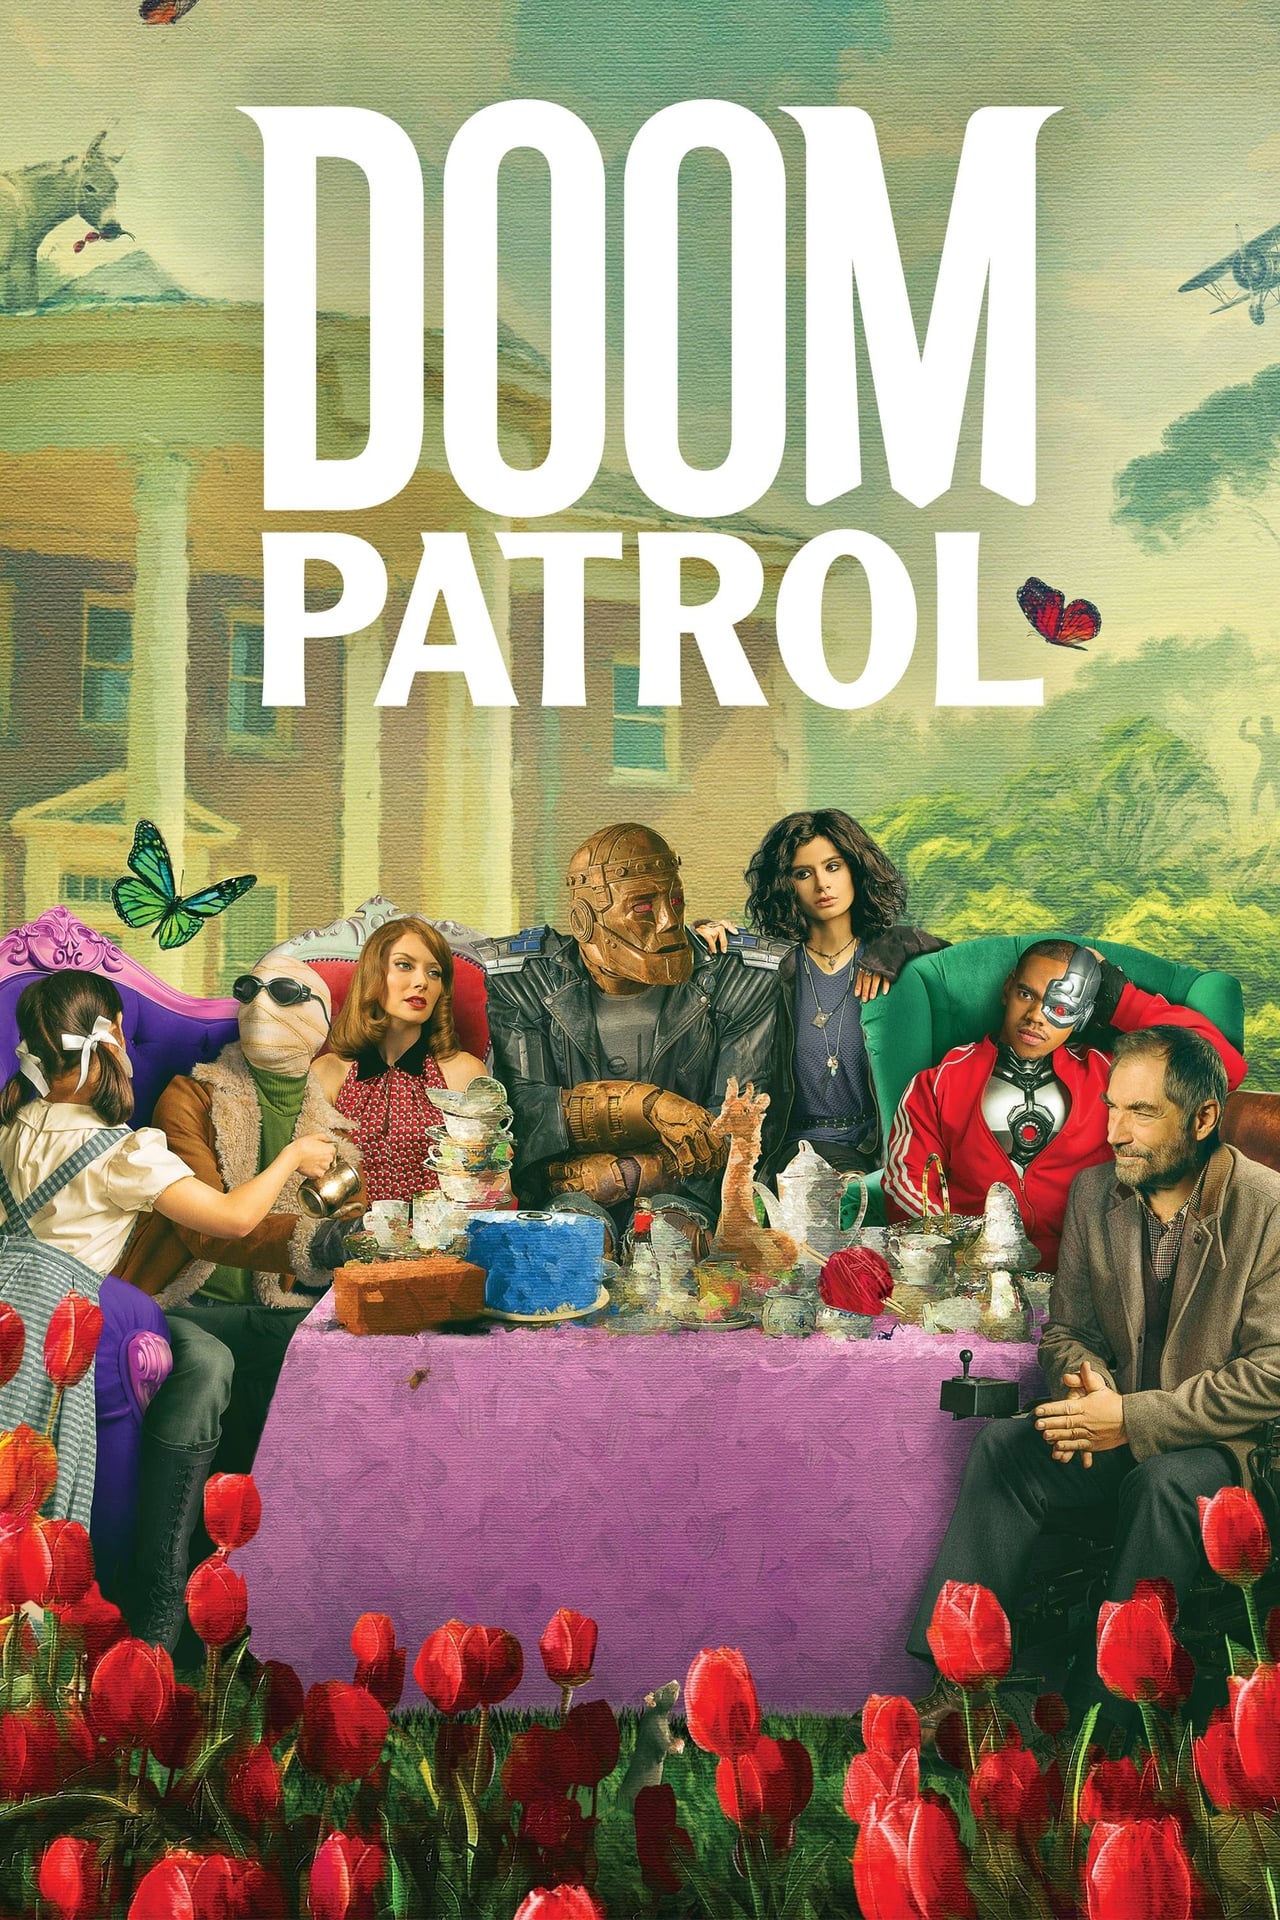 Doom Patrol (season 3)